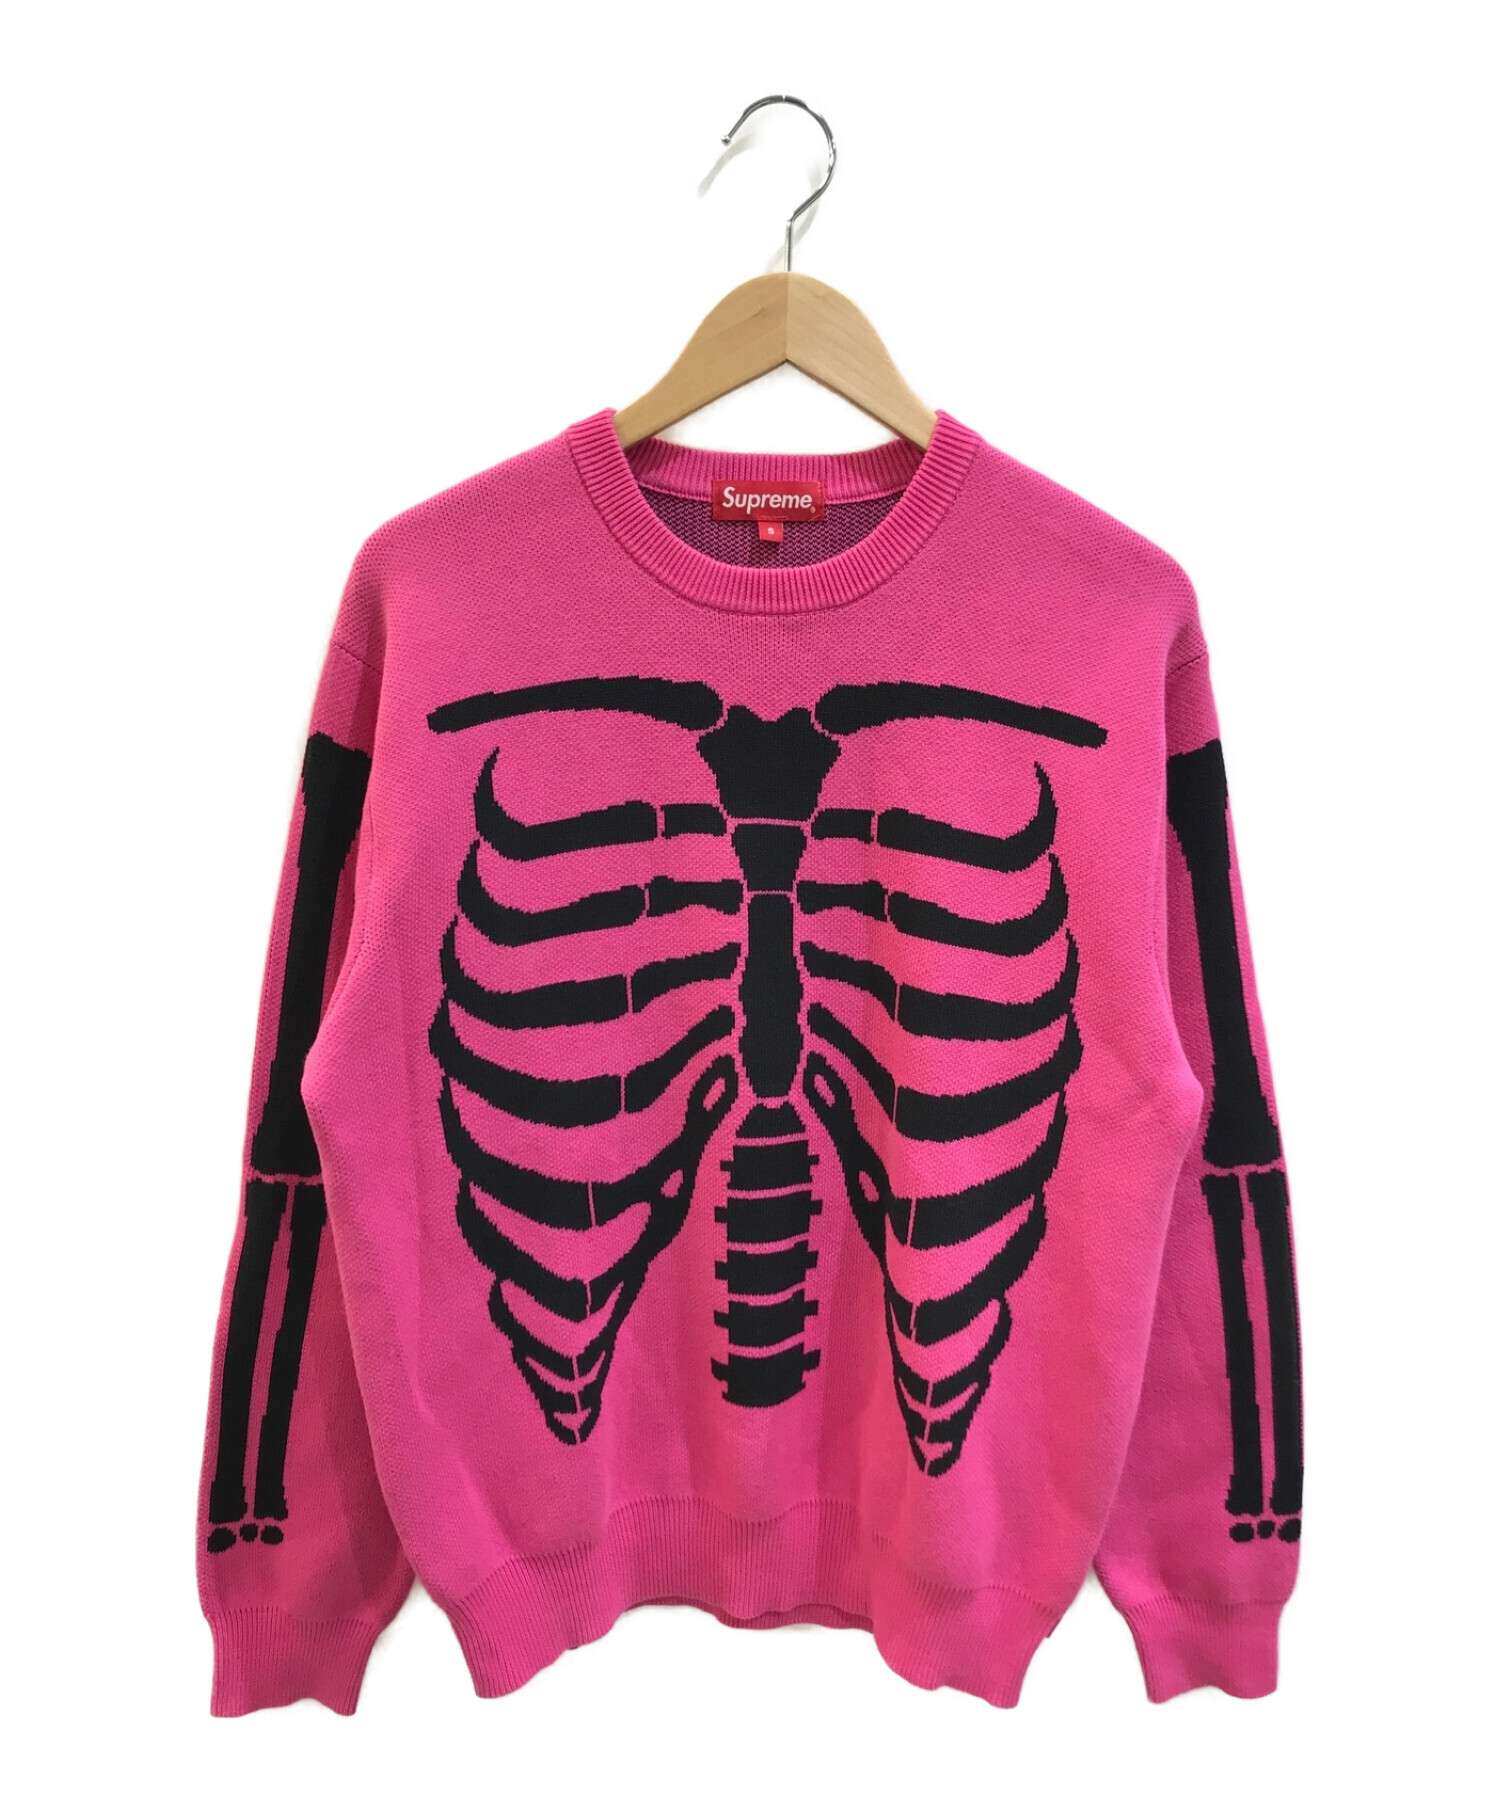 SUPREME (シュプリーム) Bones Sweater / ボーンニットセーター ピンク サイズ:S